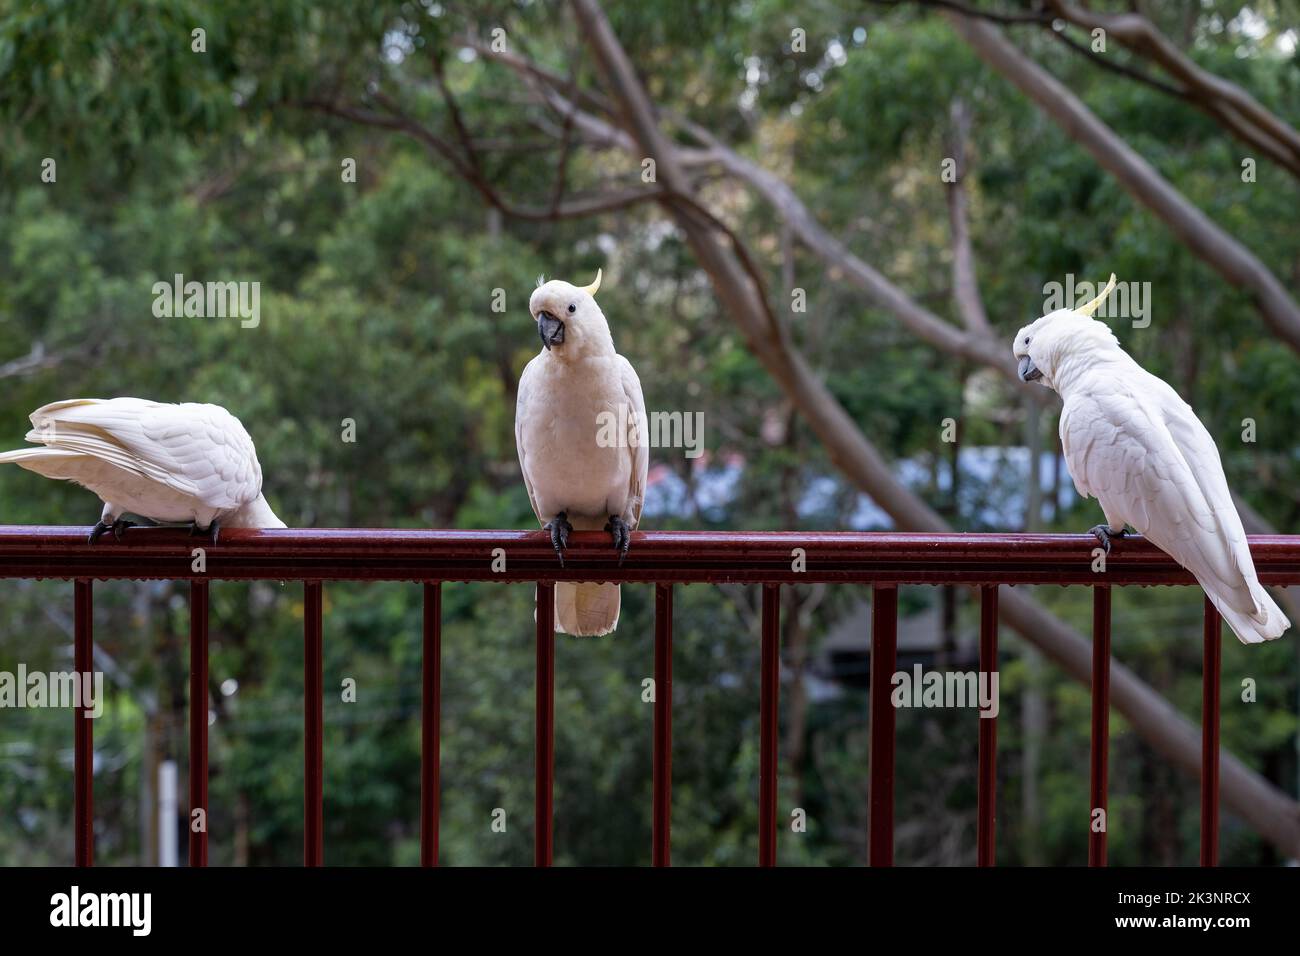 Vögel sitzen auf Geländern auf dem Balkon des Gebäudes. Konzept von Vögeln und Menschen, die sich zusammenleben. Vögel, die in menschlichen städtischen Gebieten in Australien überleben. Stockfoto